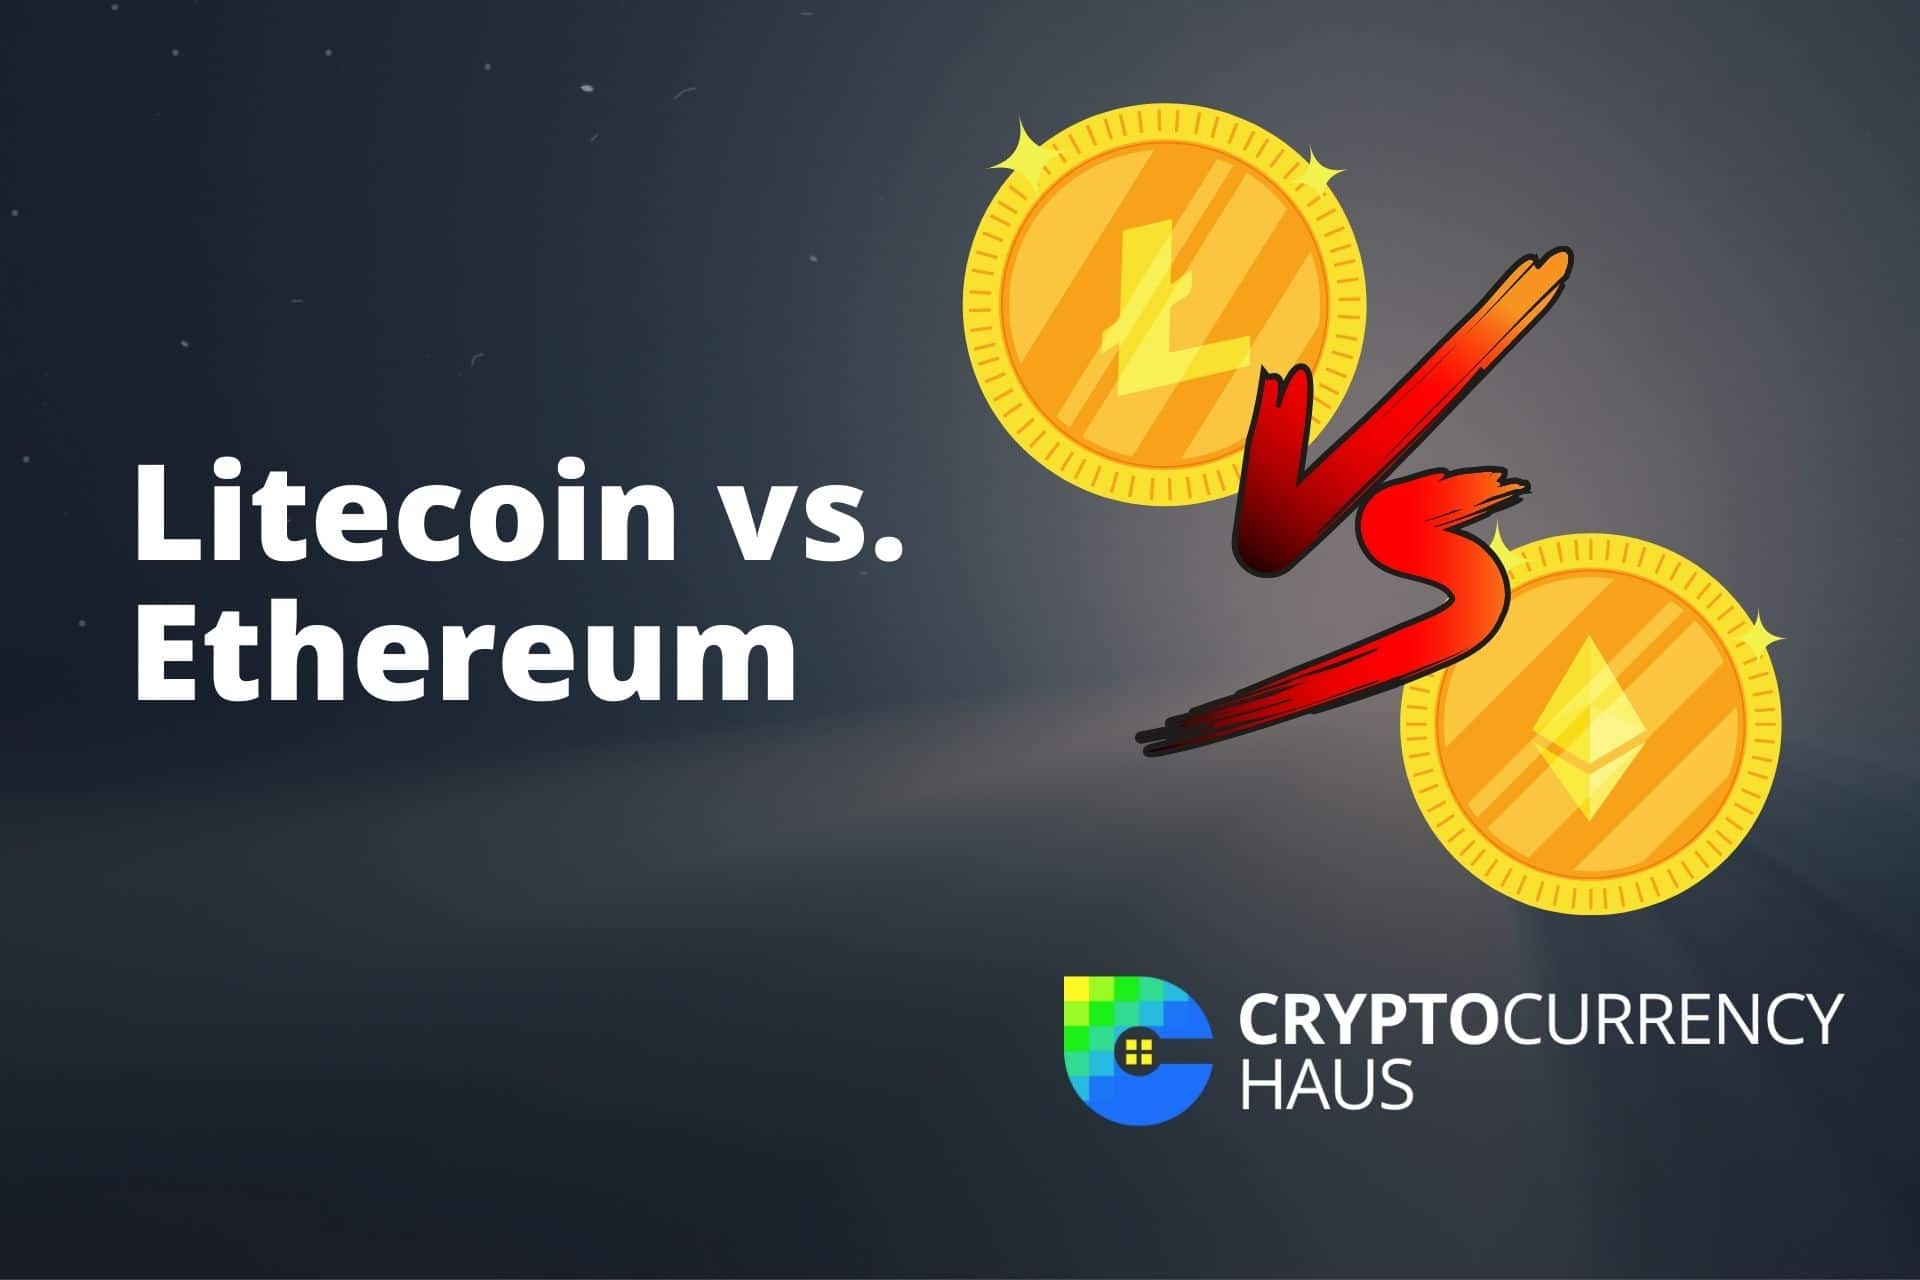 litecoin vs bitcoin vs ethereum vs ripple